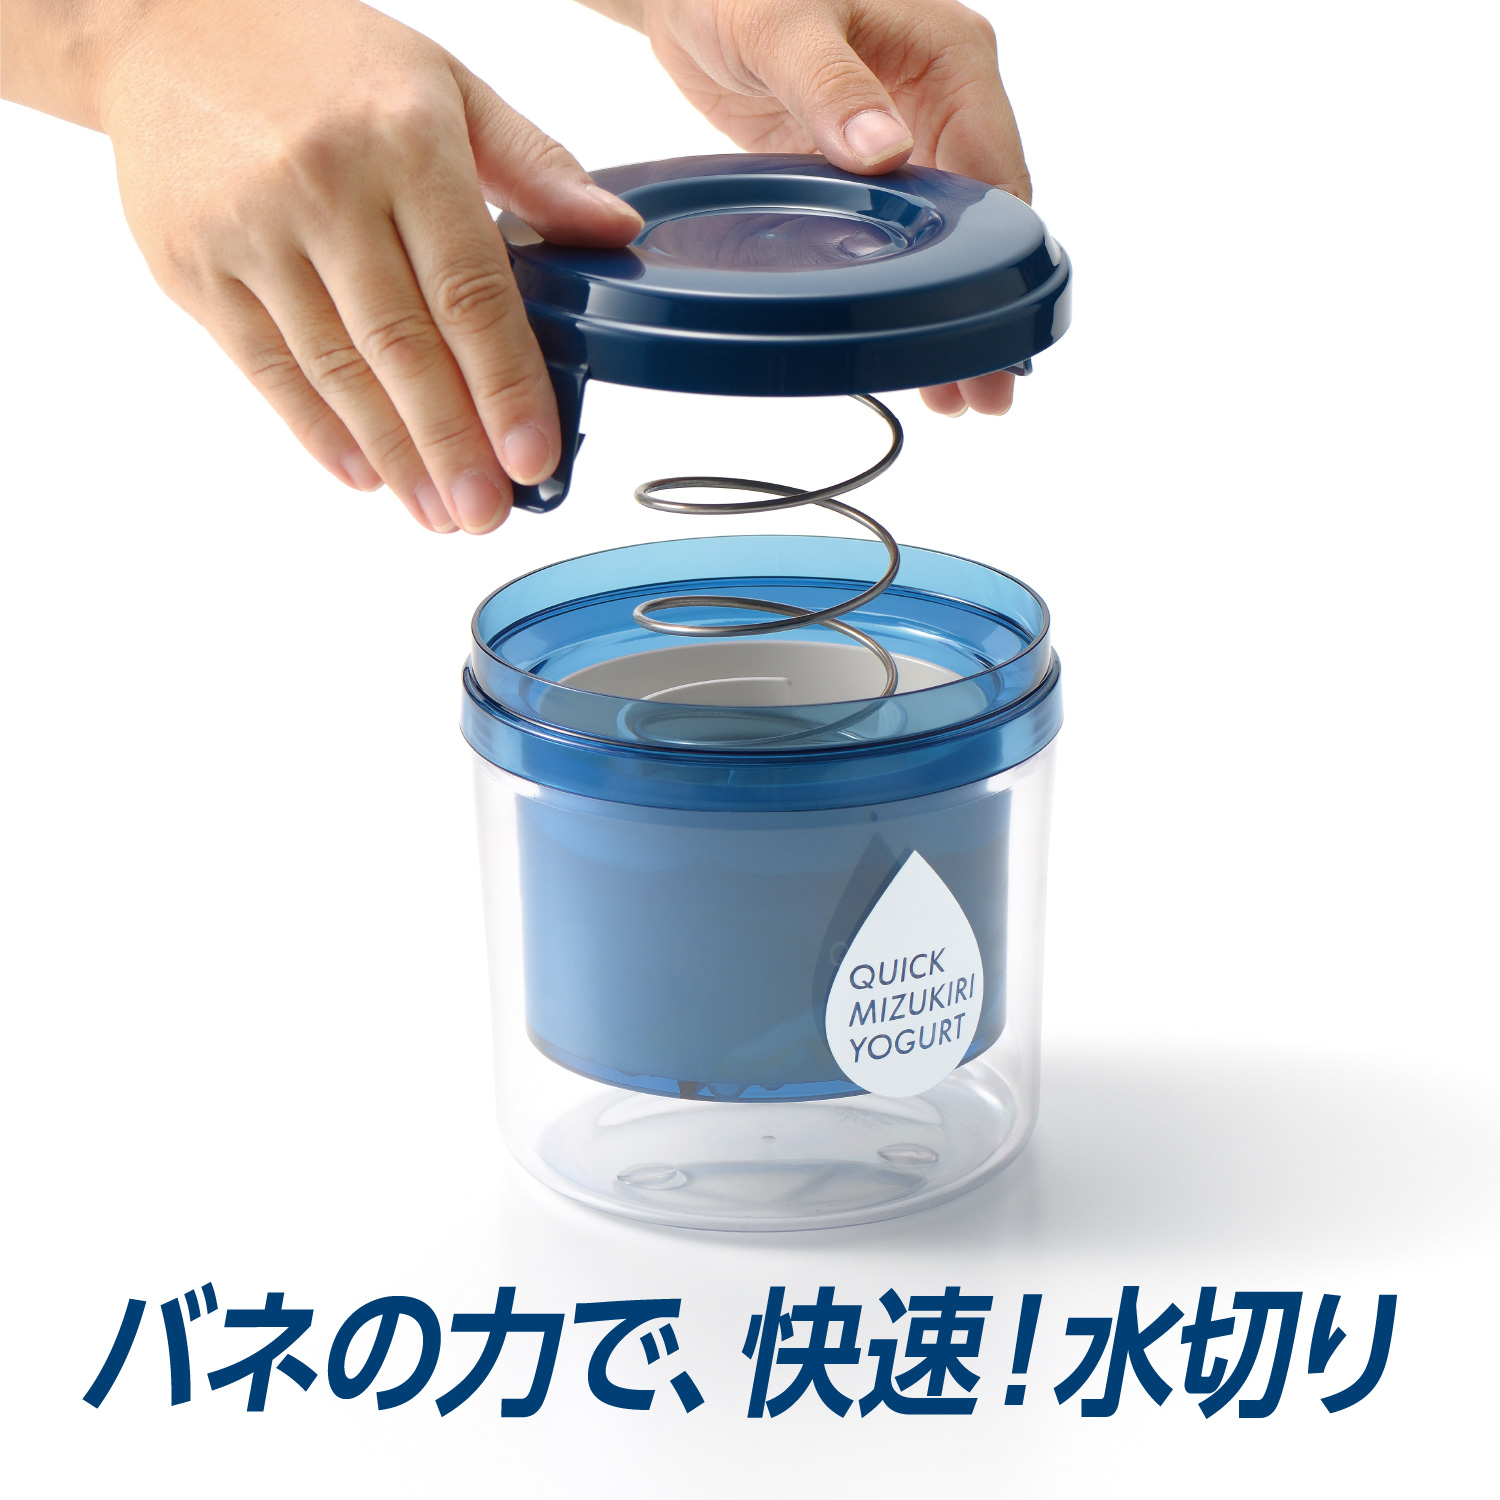 クイック水切りヨーグルト / 株式会社曙産業｜プラスチック総合メーカー